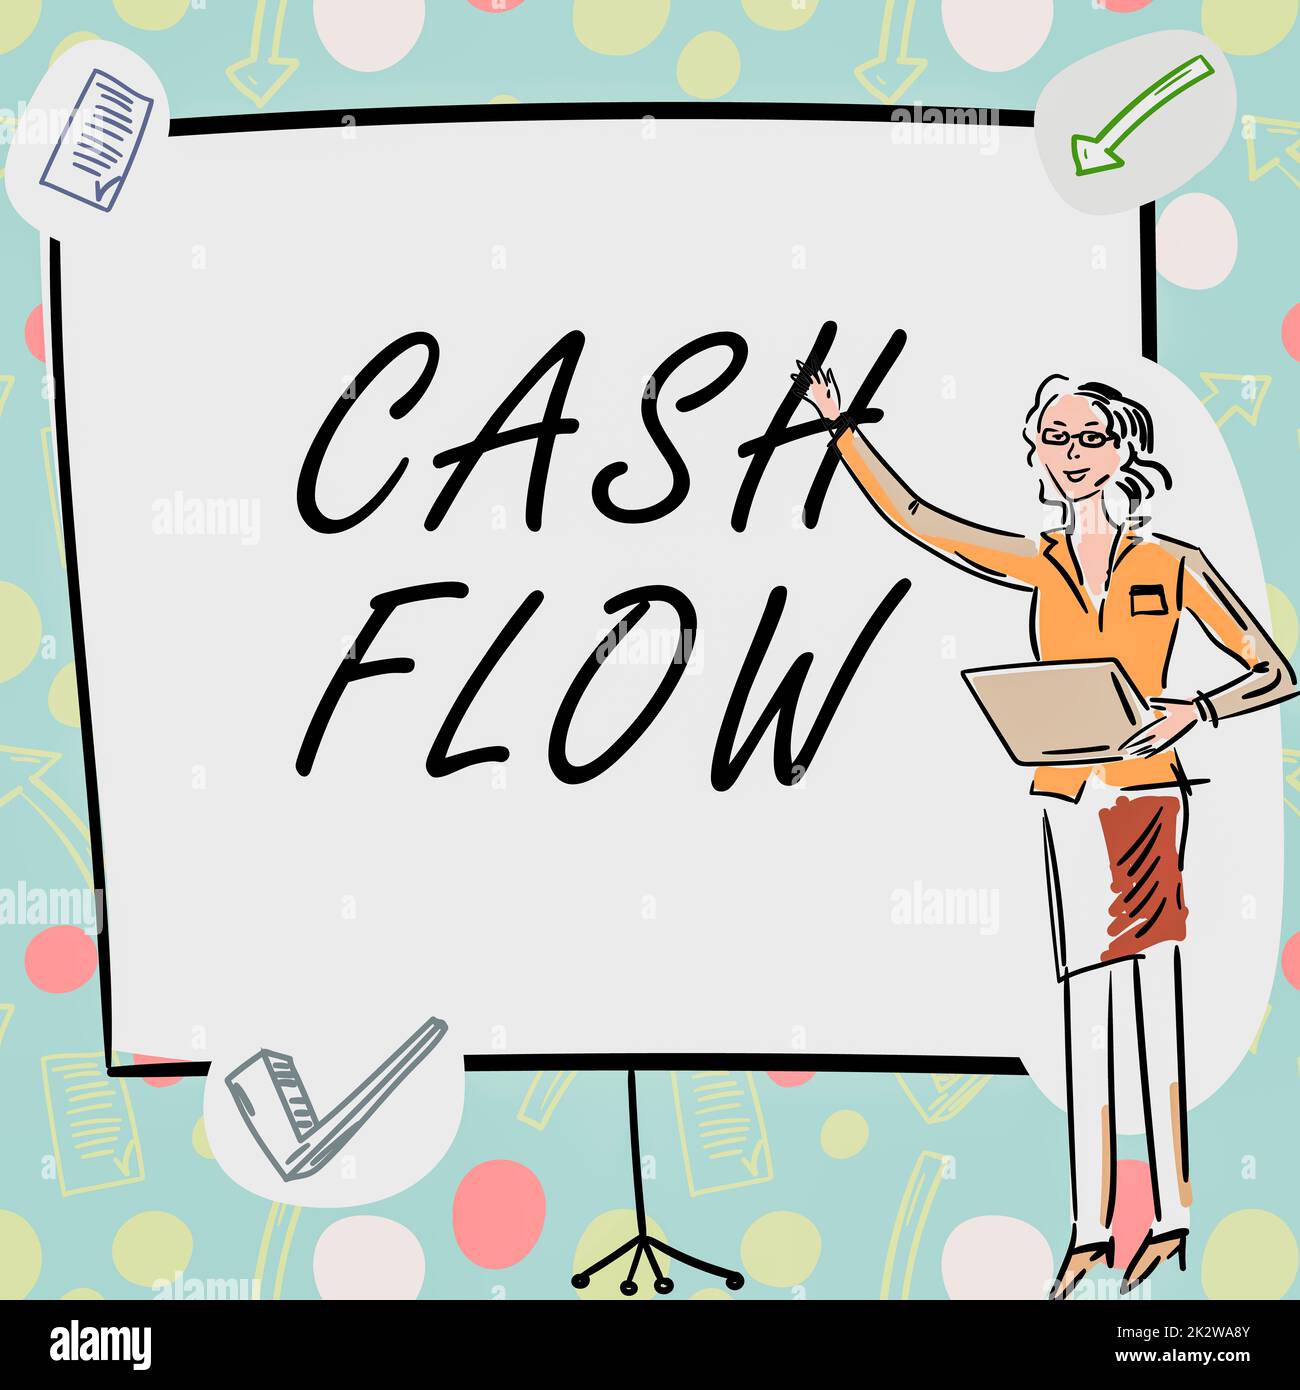 Textüberschrift für den Cashflow. Internet-Konzept Bewegung des Geldes in und aus die Liquidität beeinflussen Geschäftsfrau Casual Stand präsentiert Diagramme und neue wundervolle Ideen. Stockfoto